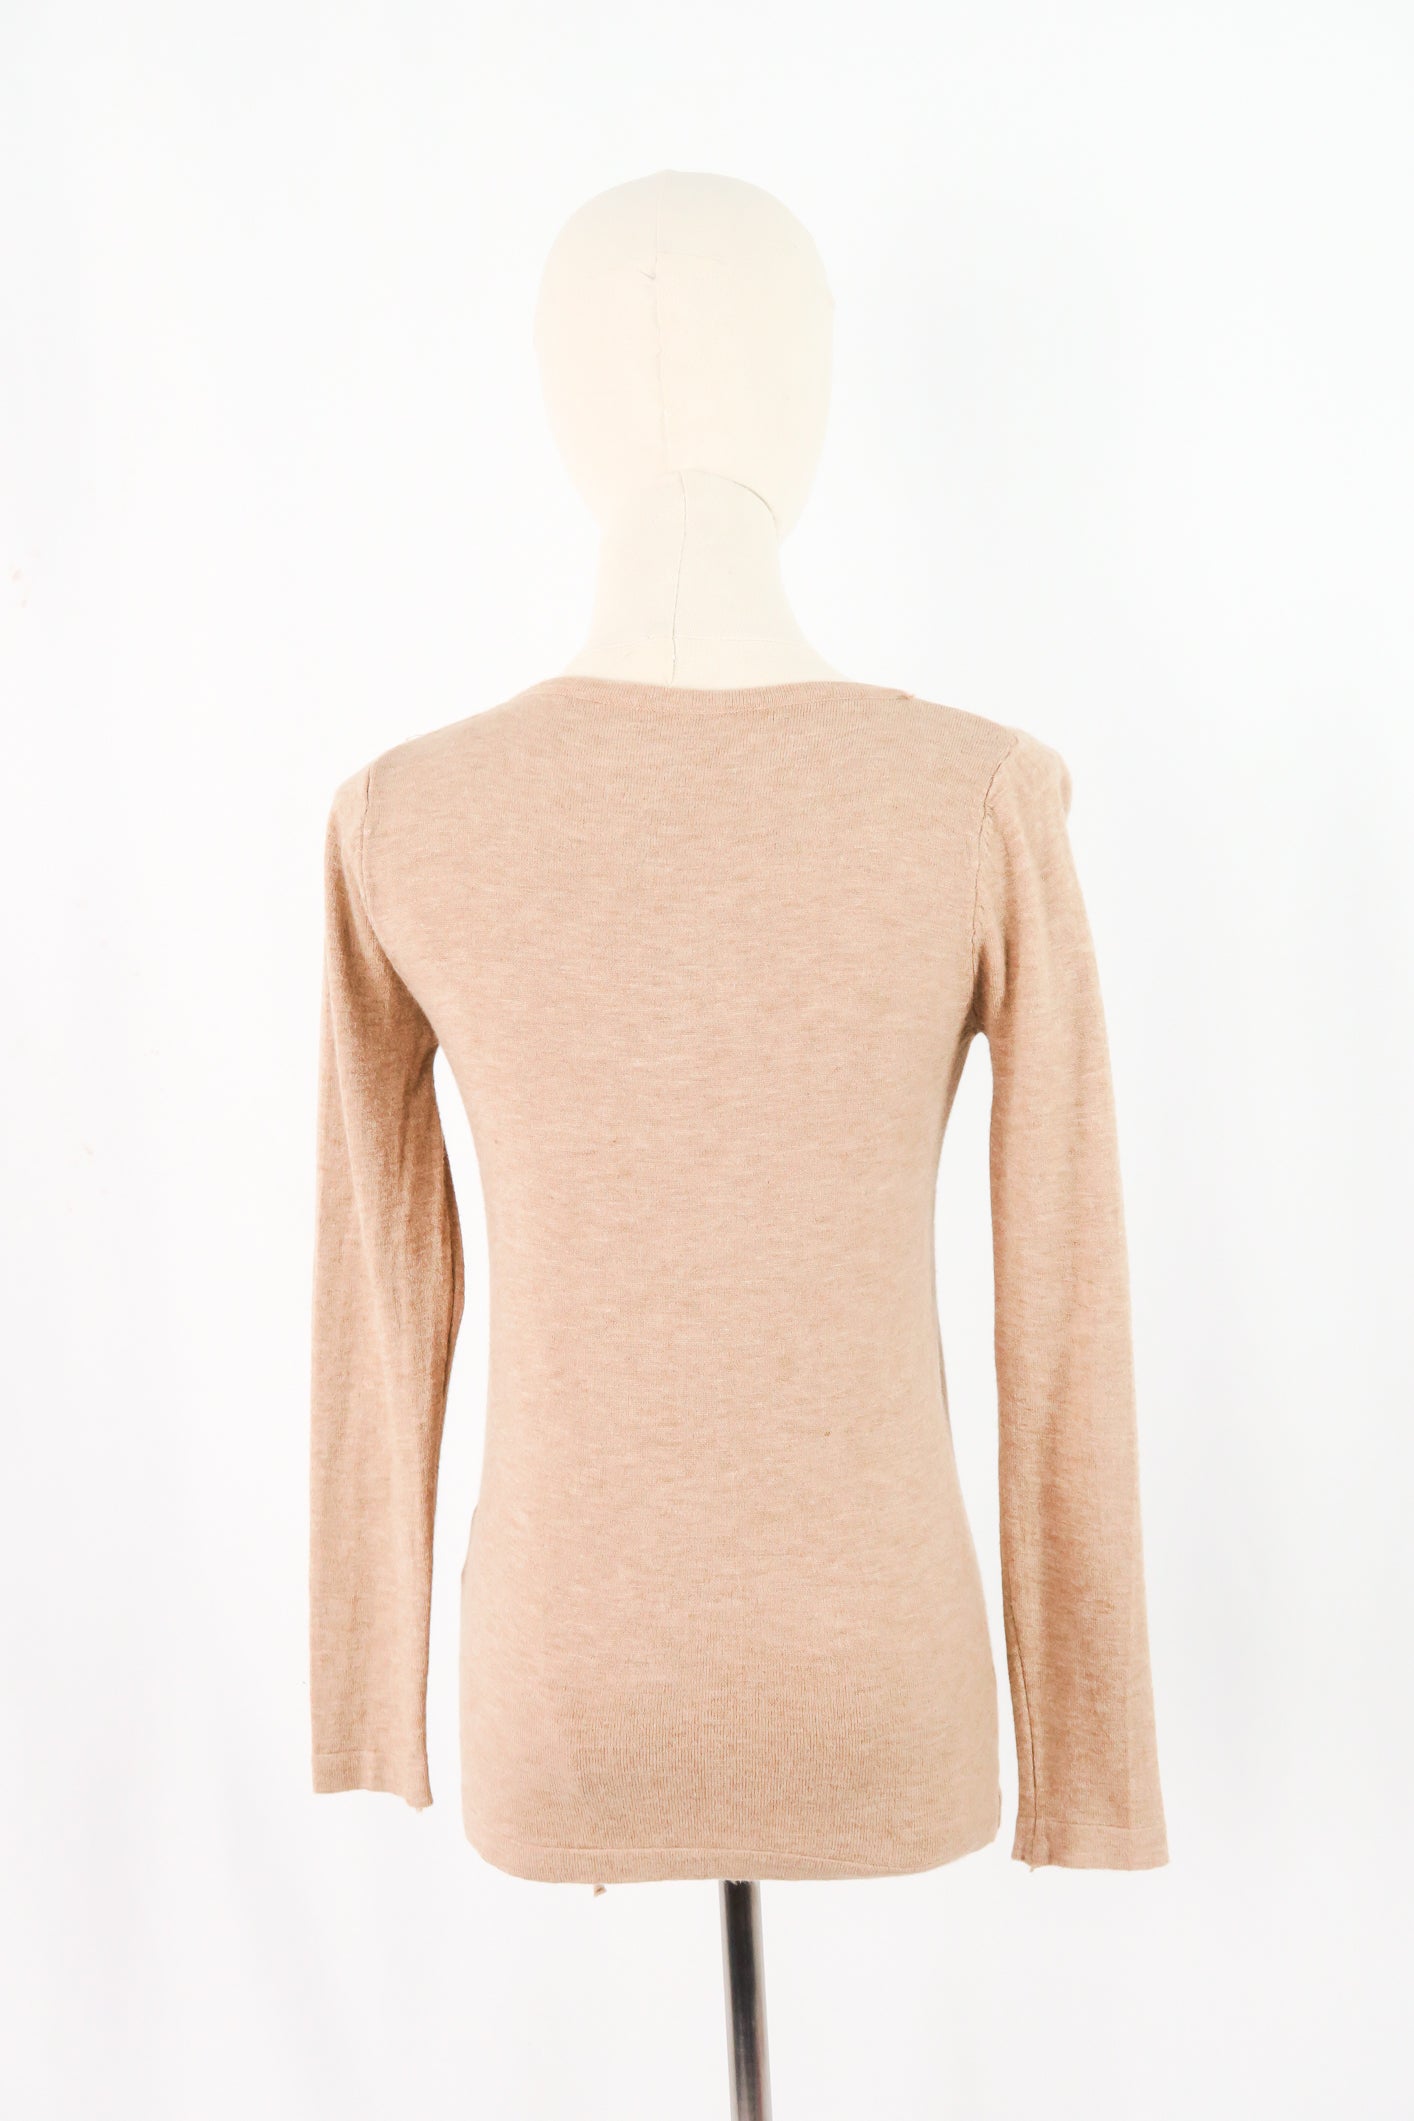 เสื้อไหมพรม เสื้อสเวตเตอร์ แขนยาว รูดหน้า - Women's Basic Round Neck Side Split Loose Long Sleeve Knit Sweater